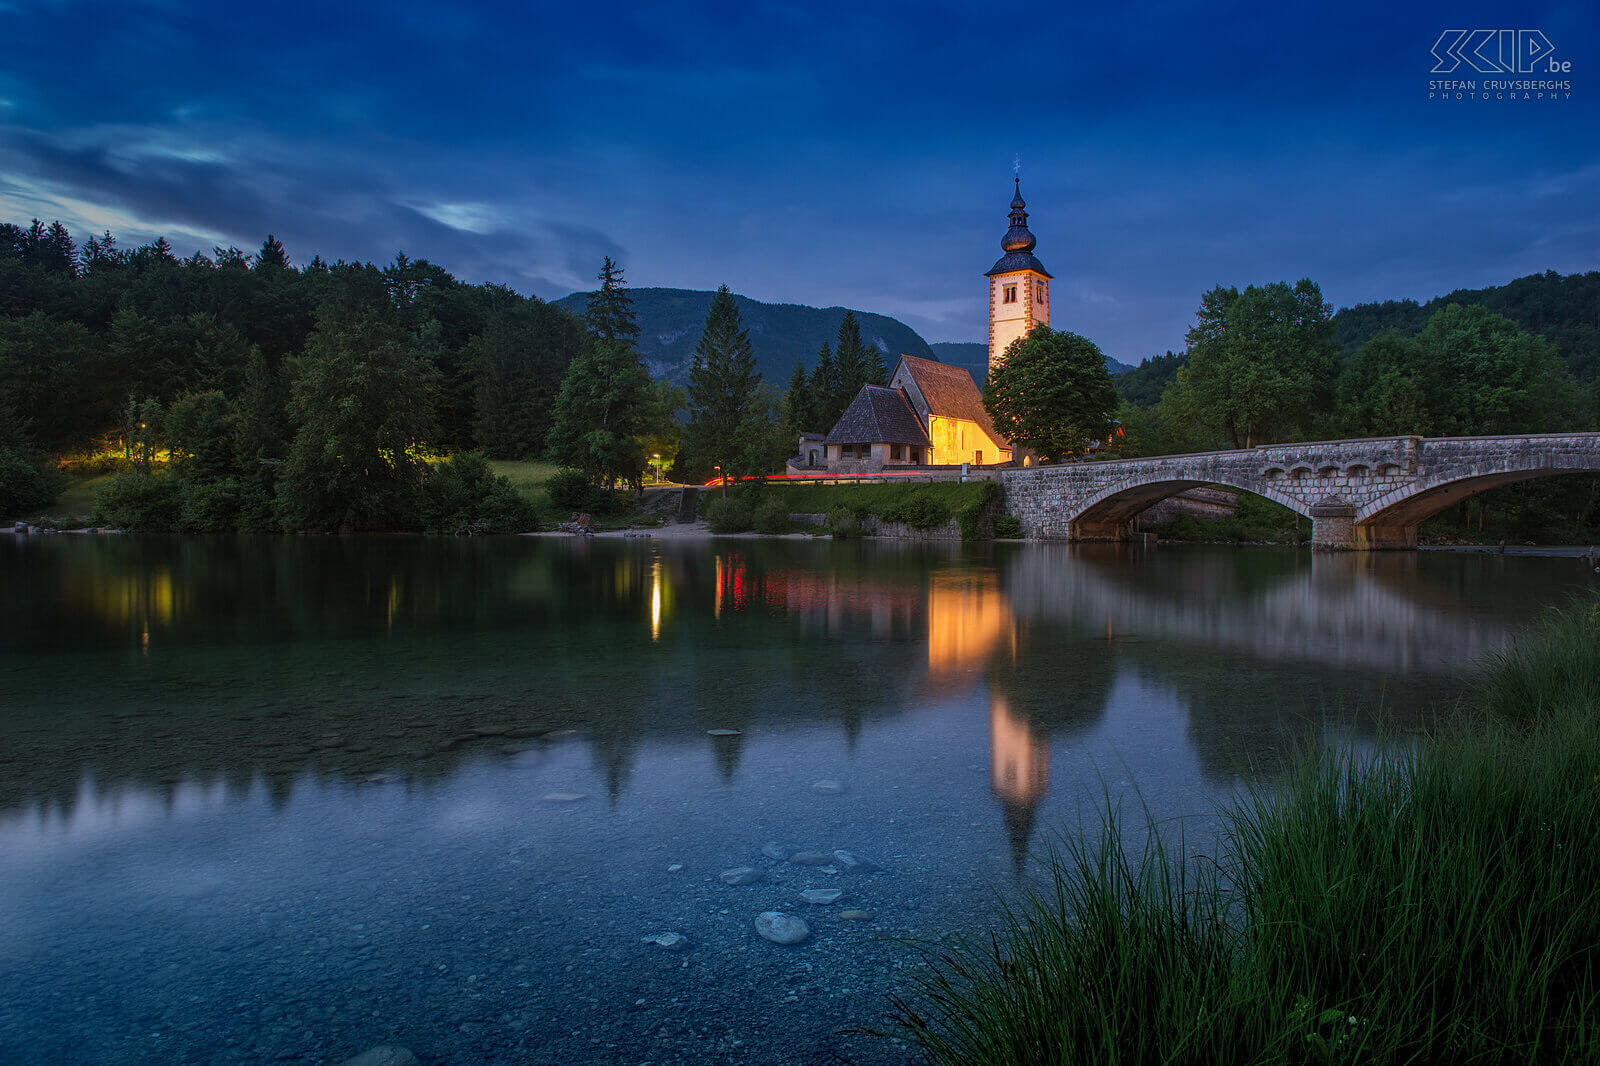 Het meer van Bohinj - Ribcev laz by night Het meer van Bohinj is een van de mooiste meren van Slovenië. Aan de oever nabij het dorpje Ribcev laz ligt de oude brug en de Johanneskerk. Stefan Cruysberghs